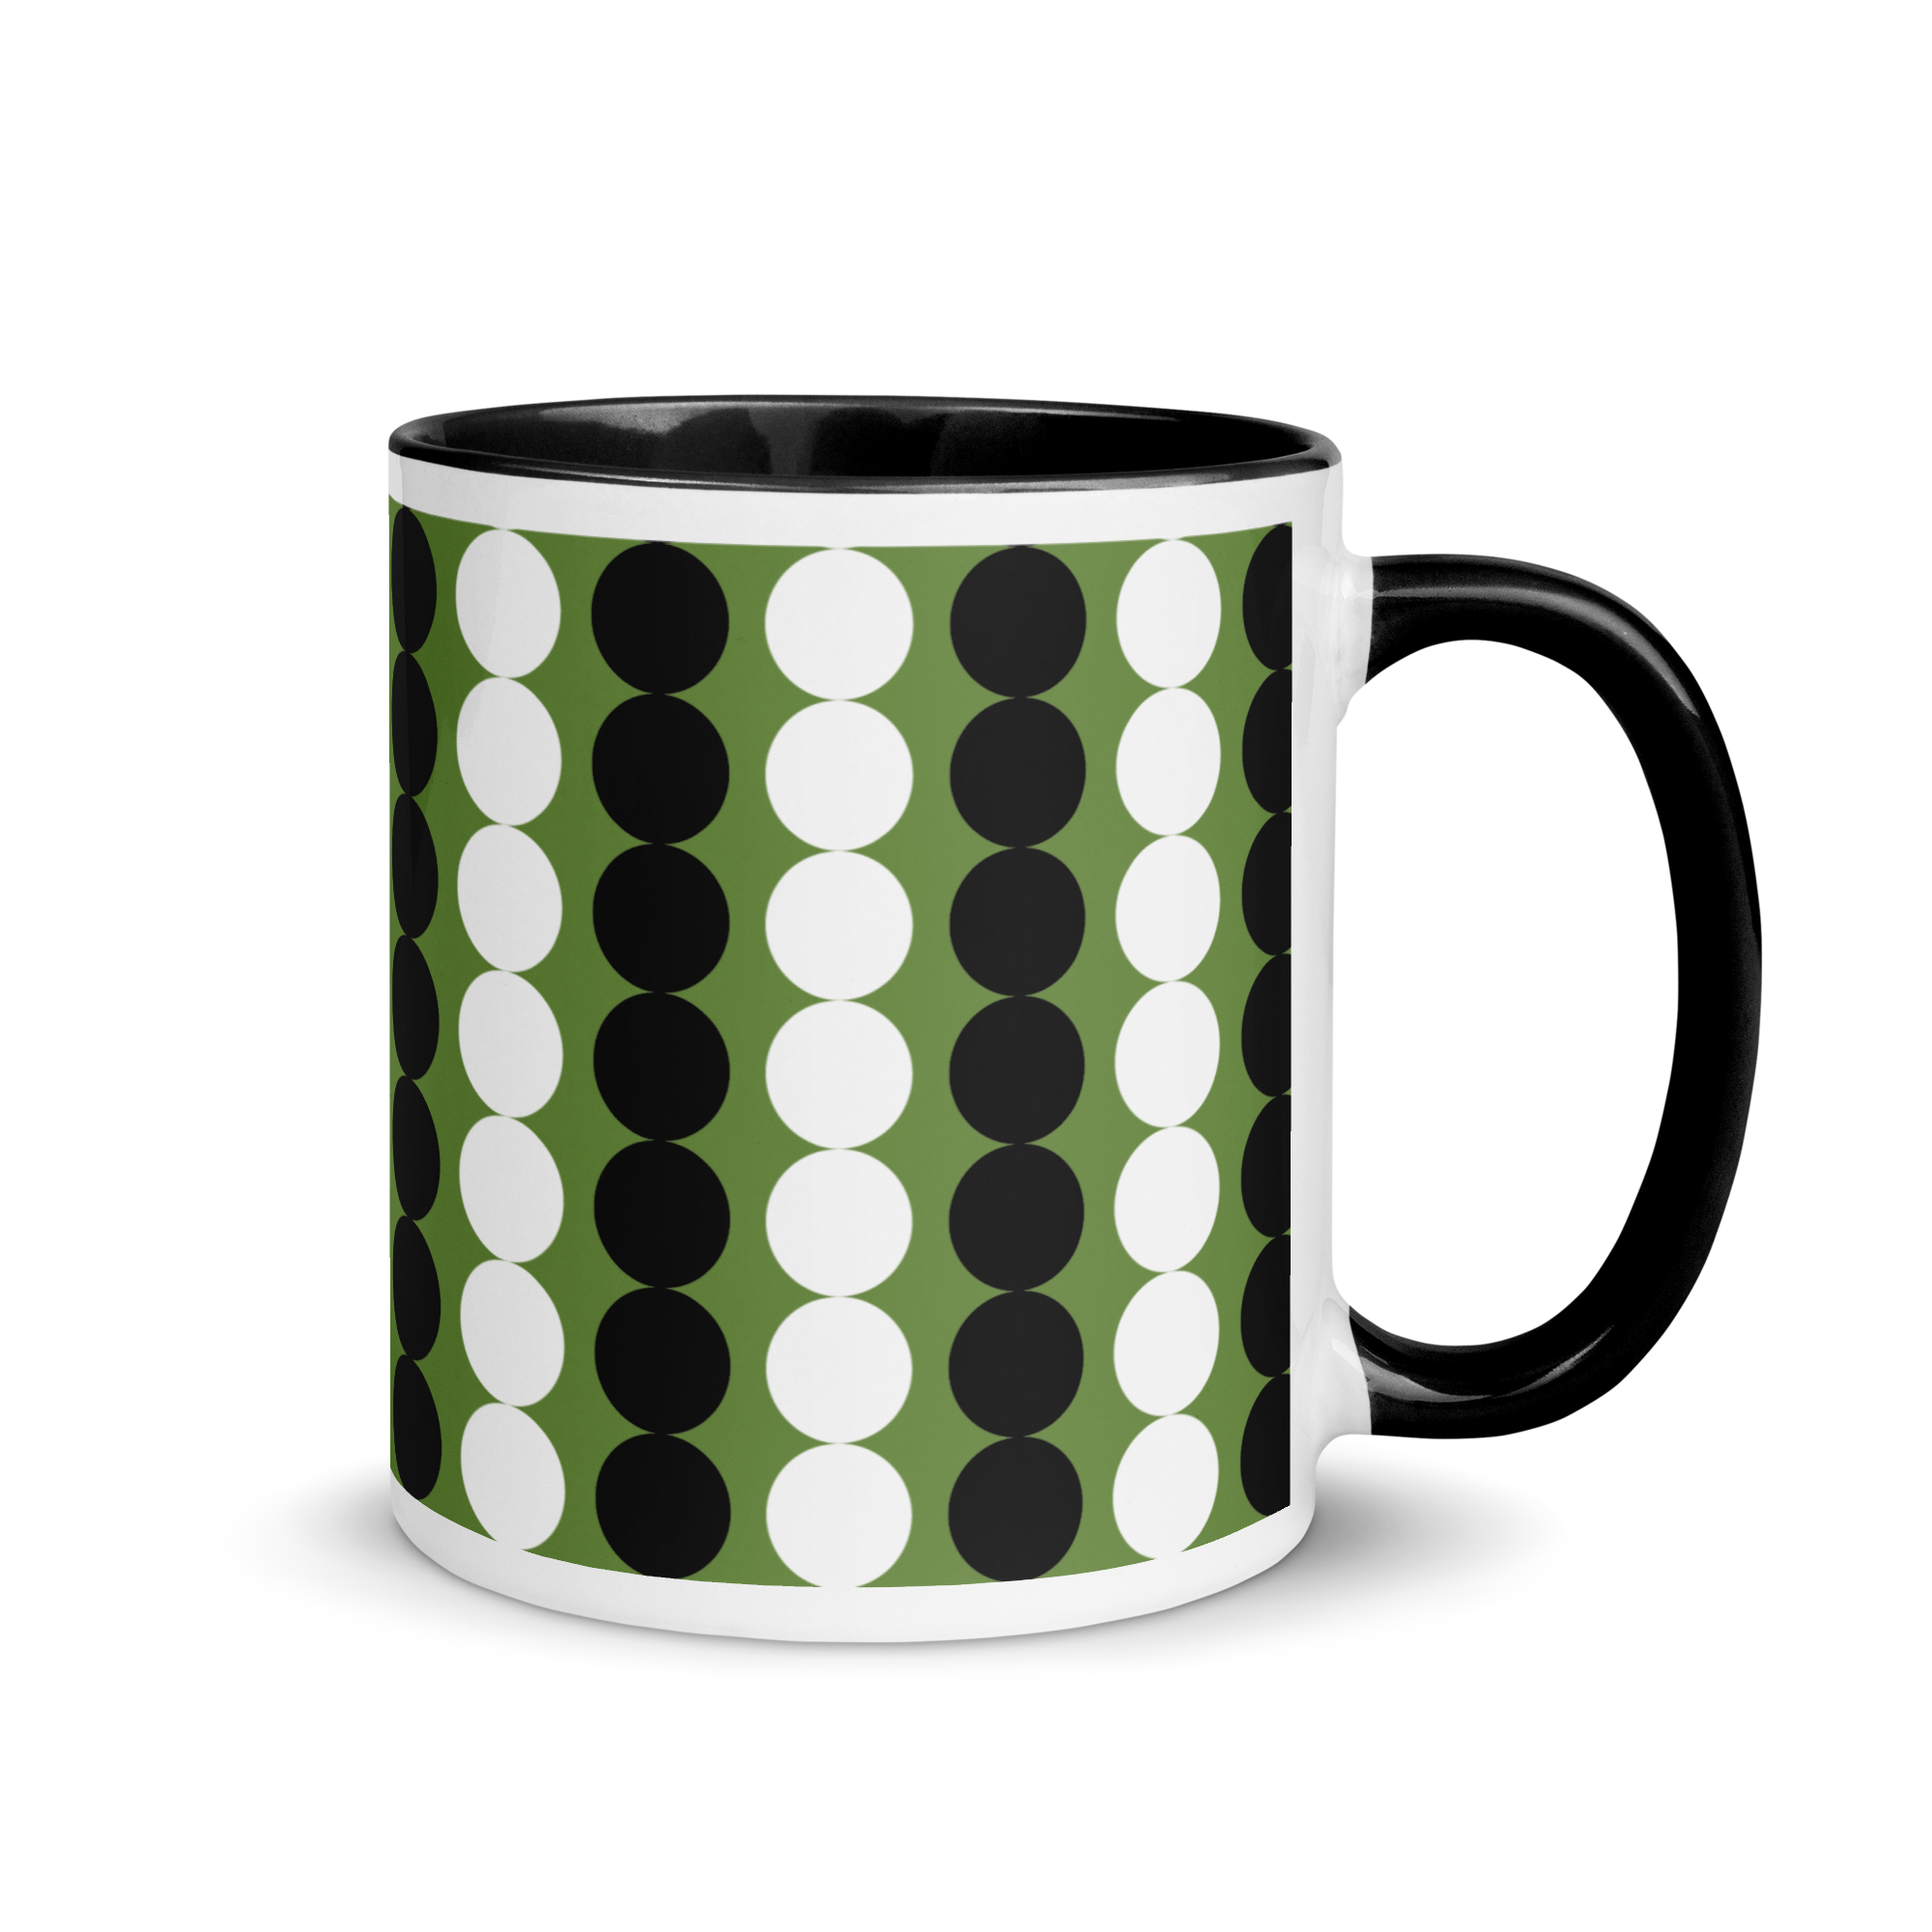 white-ceramic-mug-with-color-inside-black-11-oz-right-65e47265f246e.png